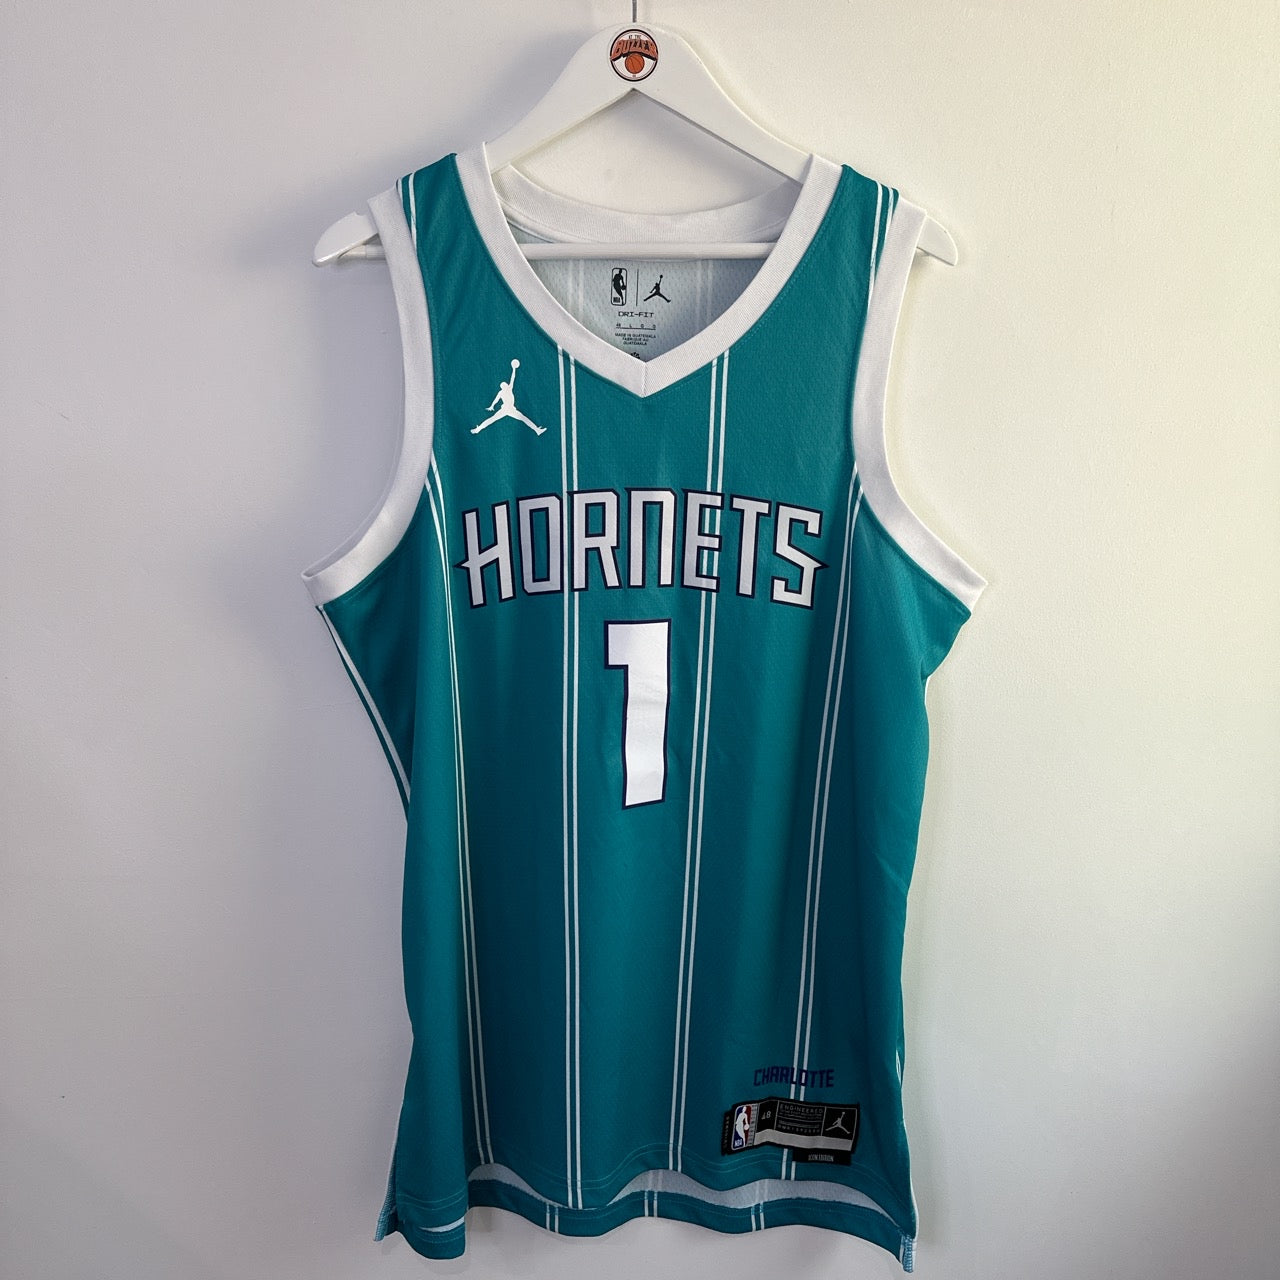 Charlotte Hornets Lamelo Ball Jordan swingman jersey - Large